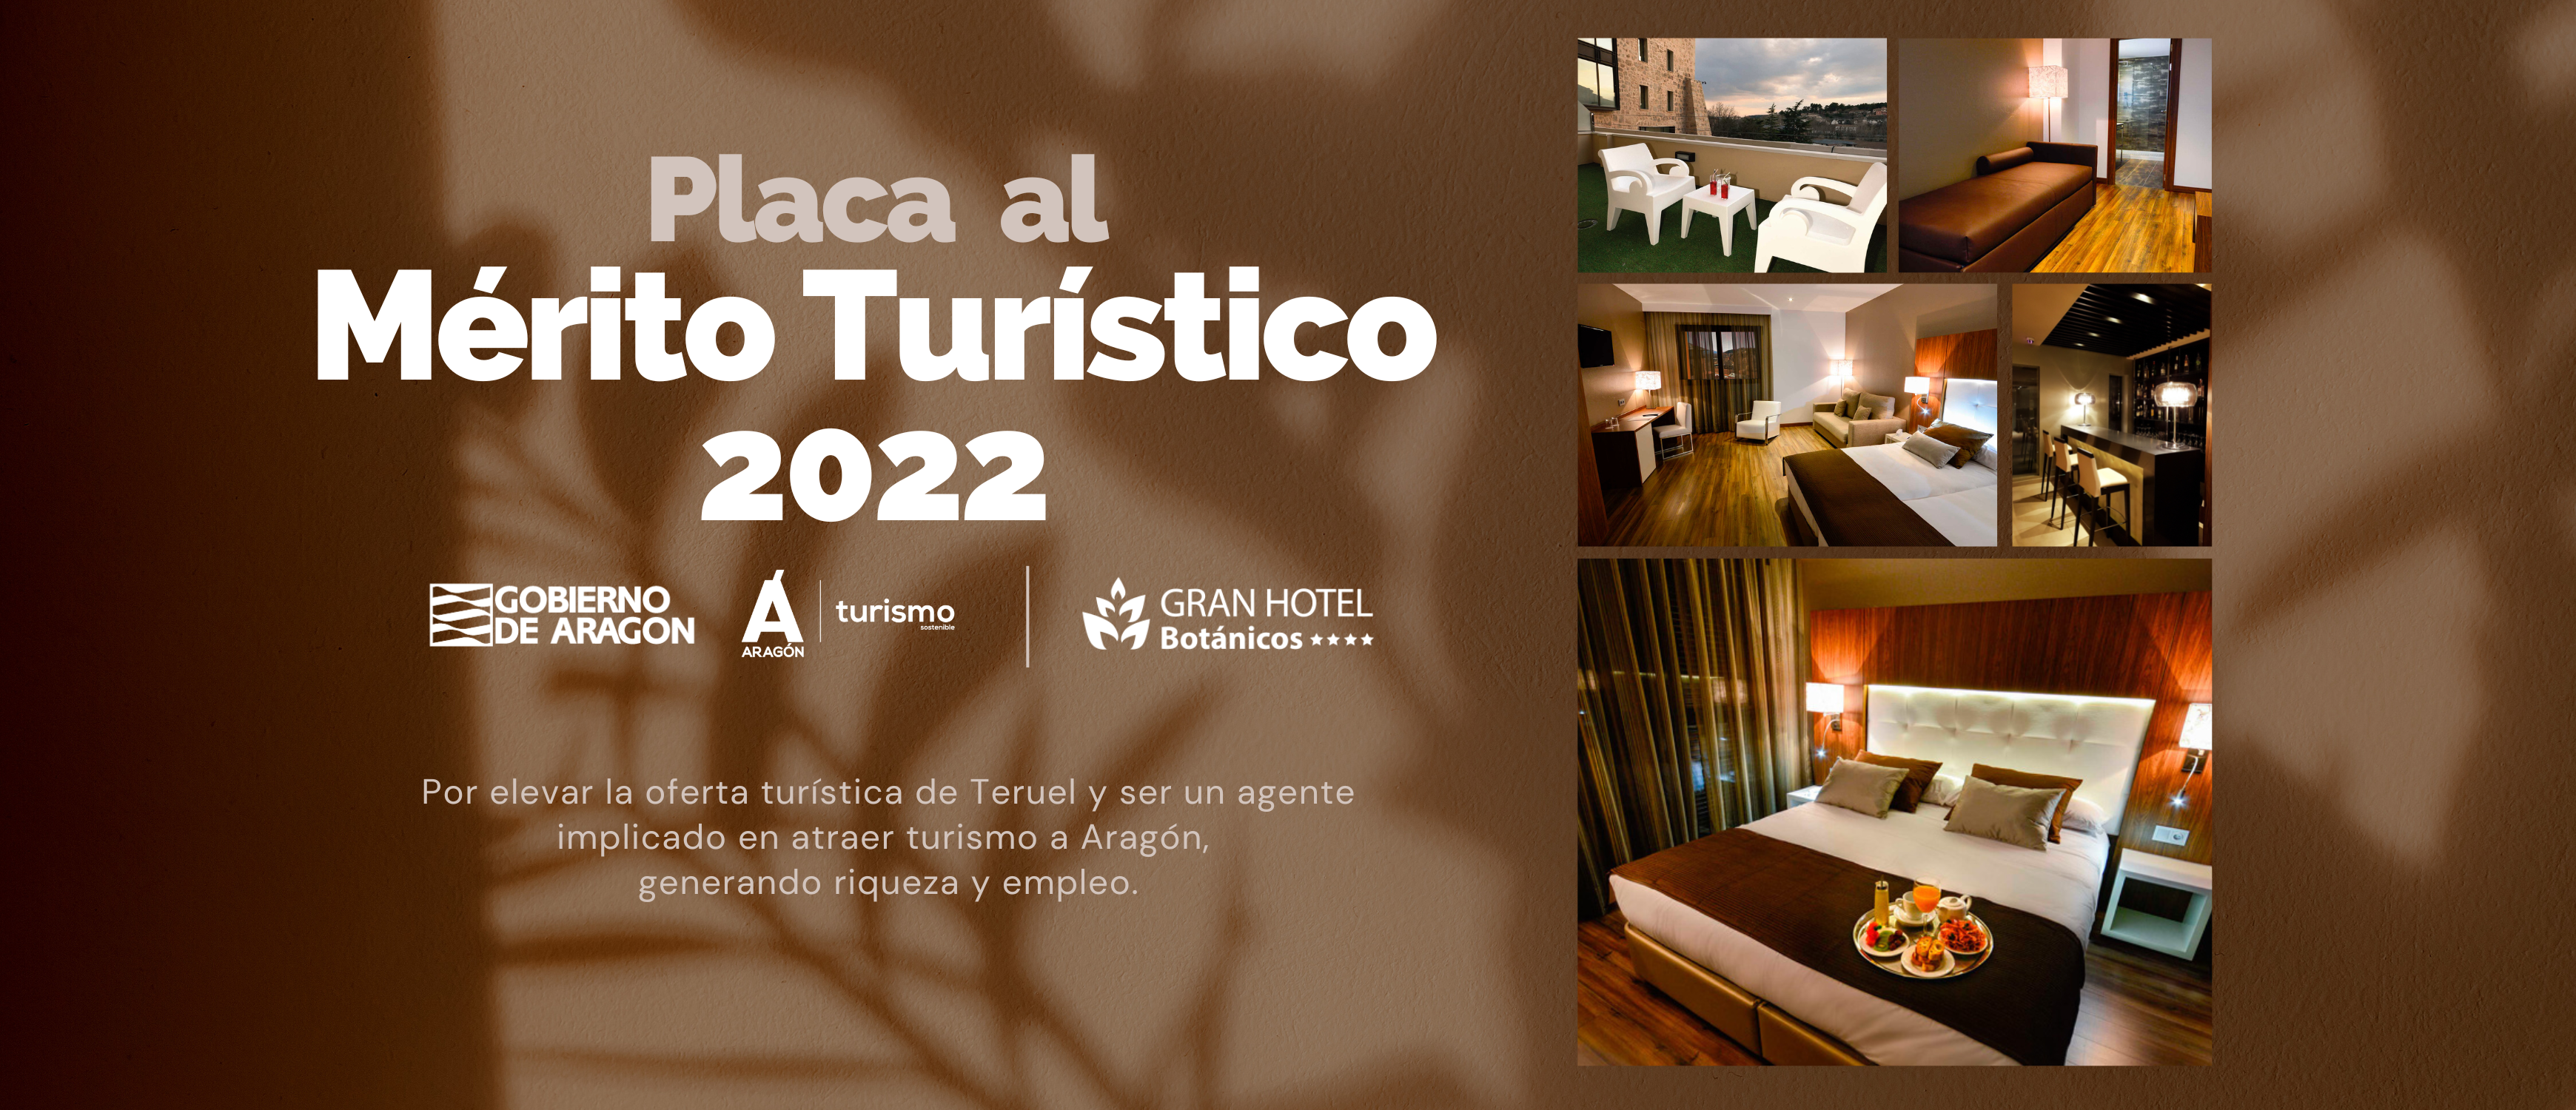 Por elevar la oferta turística de Teruel y ser un agente implicado en atraer turismo a Aragón, generando riqueza y empleo.